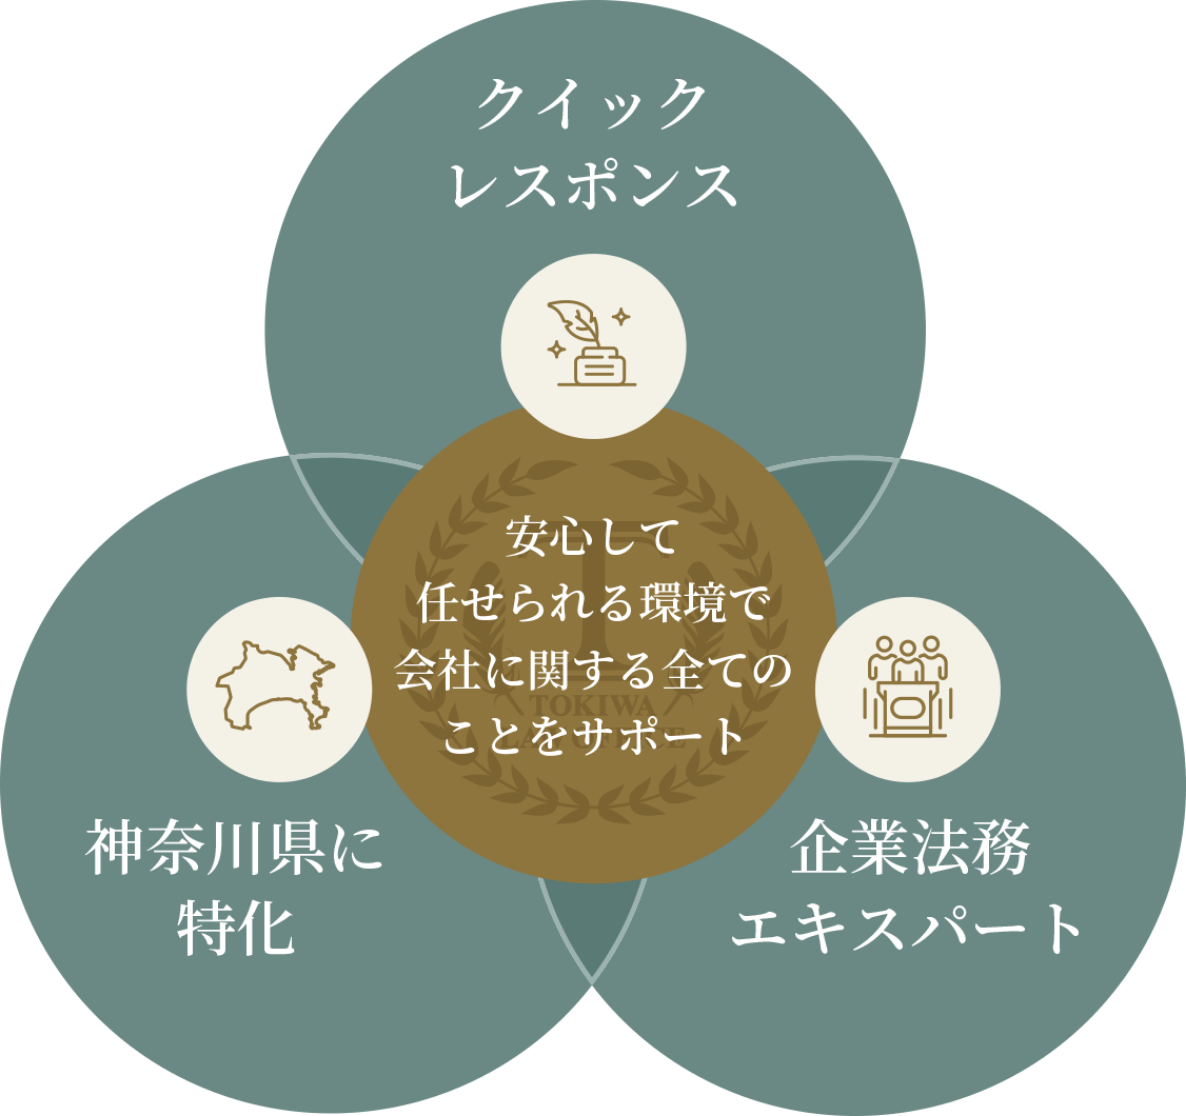 安心して任せられる環境で会社に関するすべてのことをサポート クイックレスポンス 神奈川県に特化 企業法務エキスパート